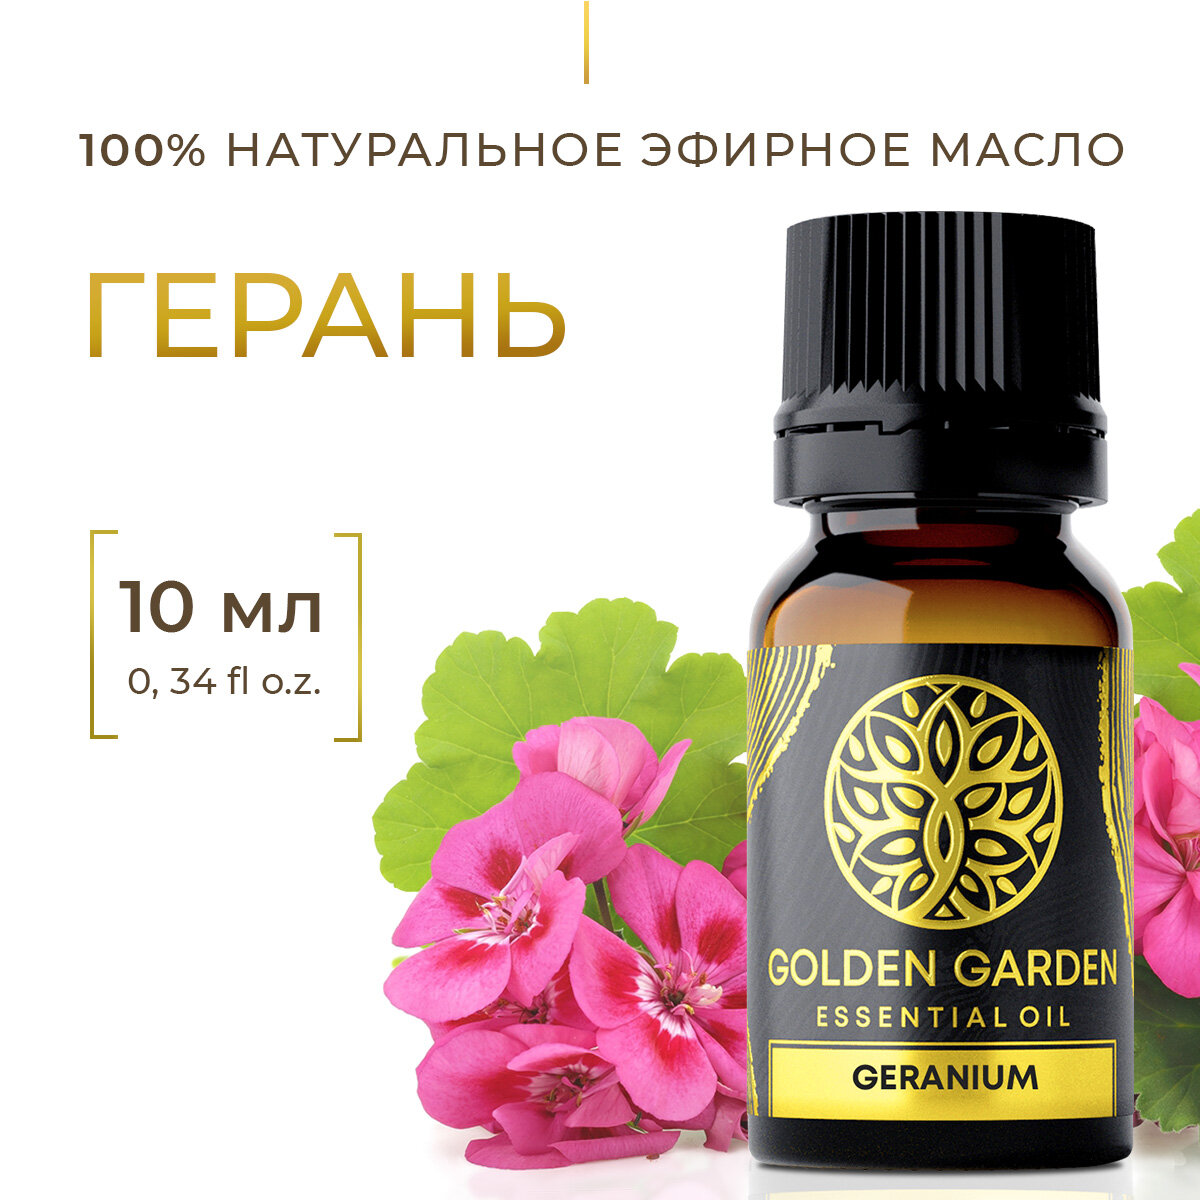 Натуральное Эфирное масло герань египетская 10 мл Golden Garden для ароматерапии, диффузора, бани и сауны